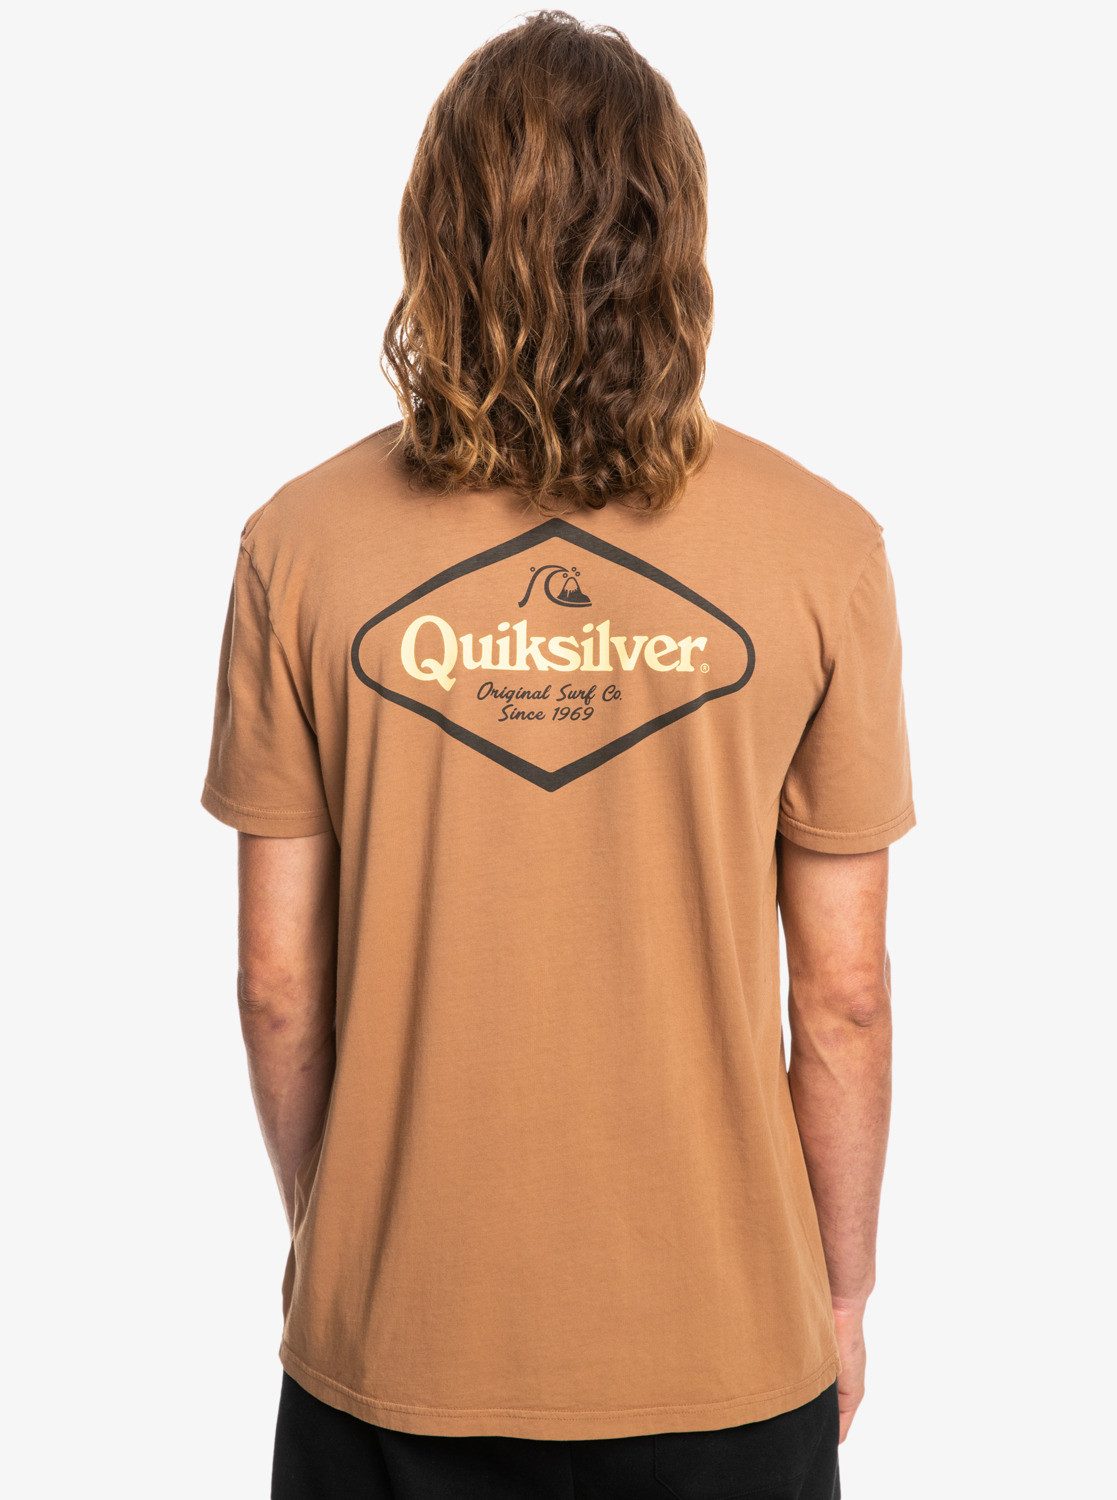 Stir It Up T-Shirt Quiksilver